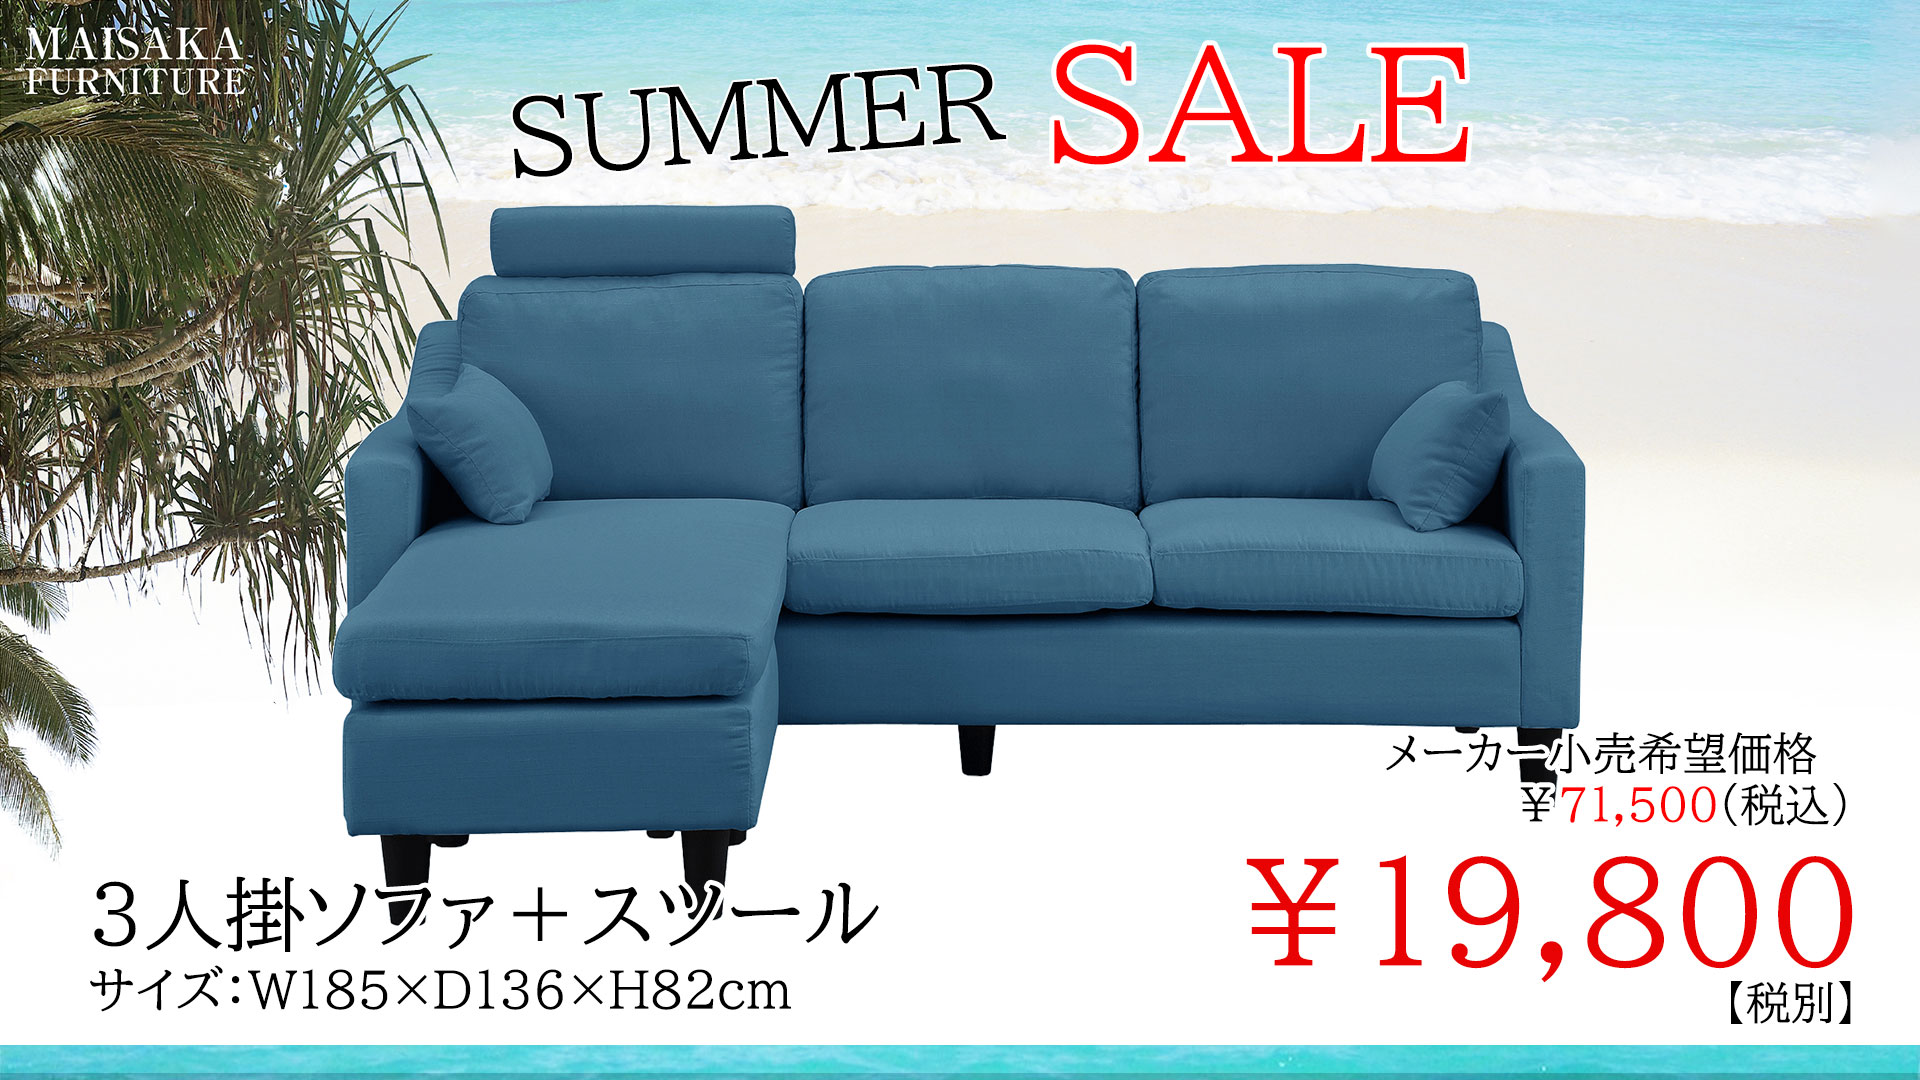 マイサカ家具7月の夏のチラシの目玉商品の青いカウチソファの画像